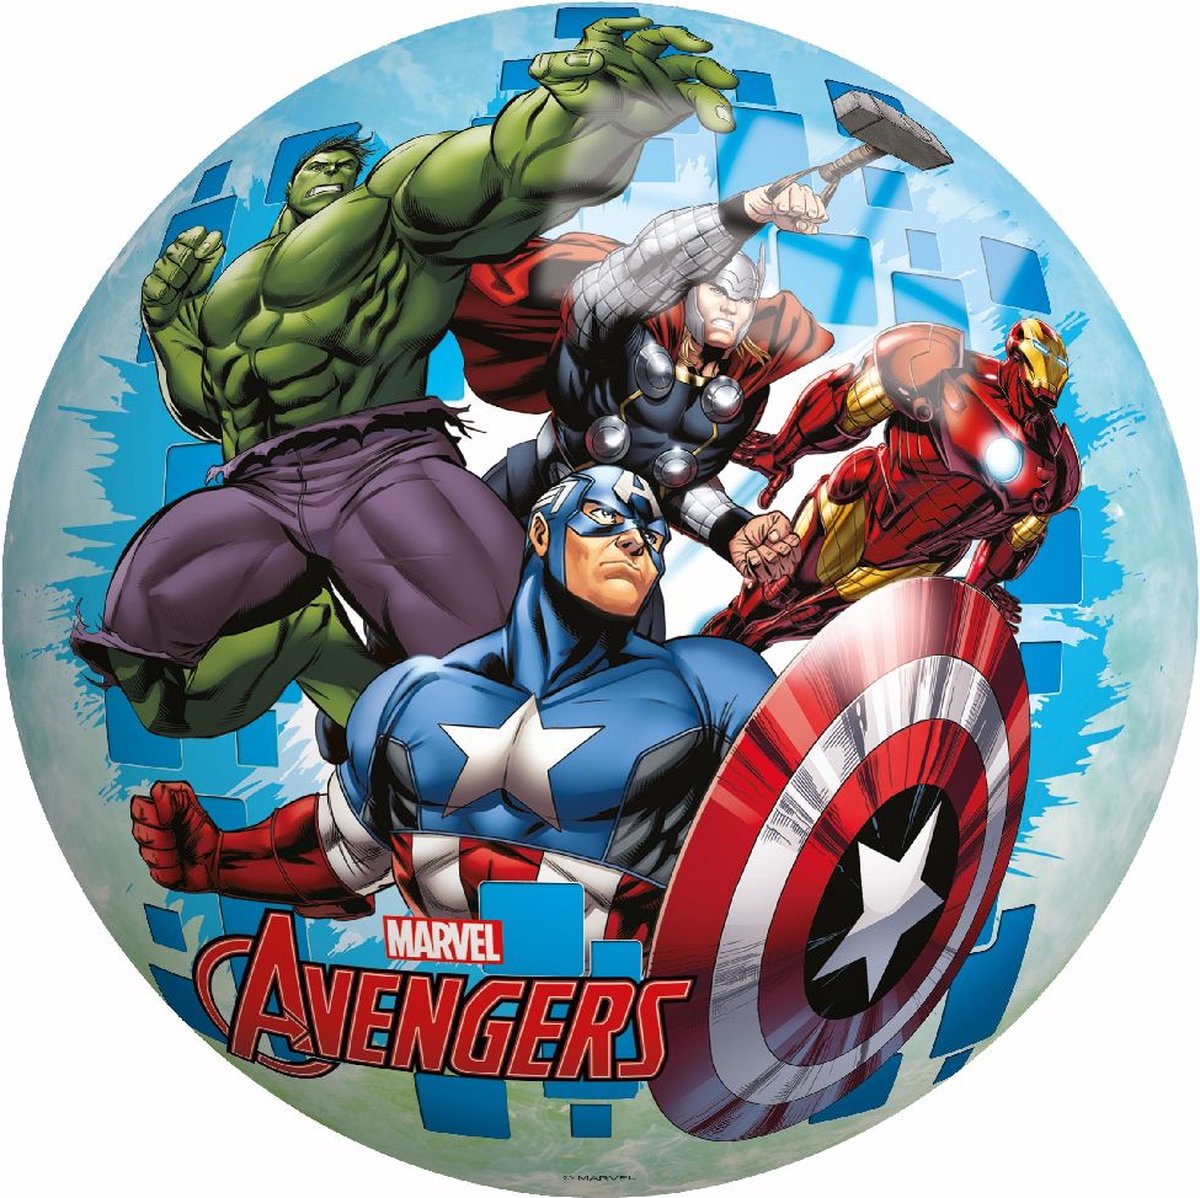 Marvel Avengers Bal - Speelbal 23CM - Voetbal - Opgeblazen